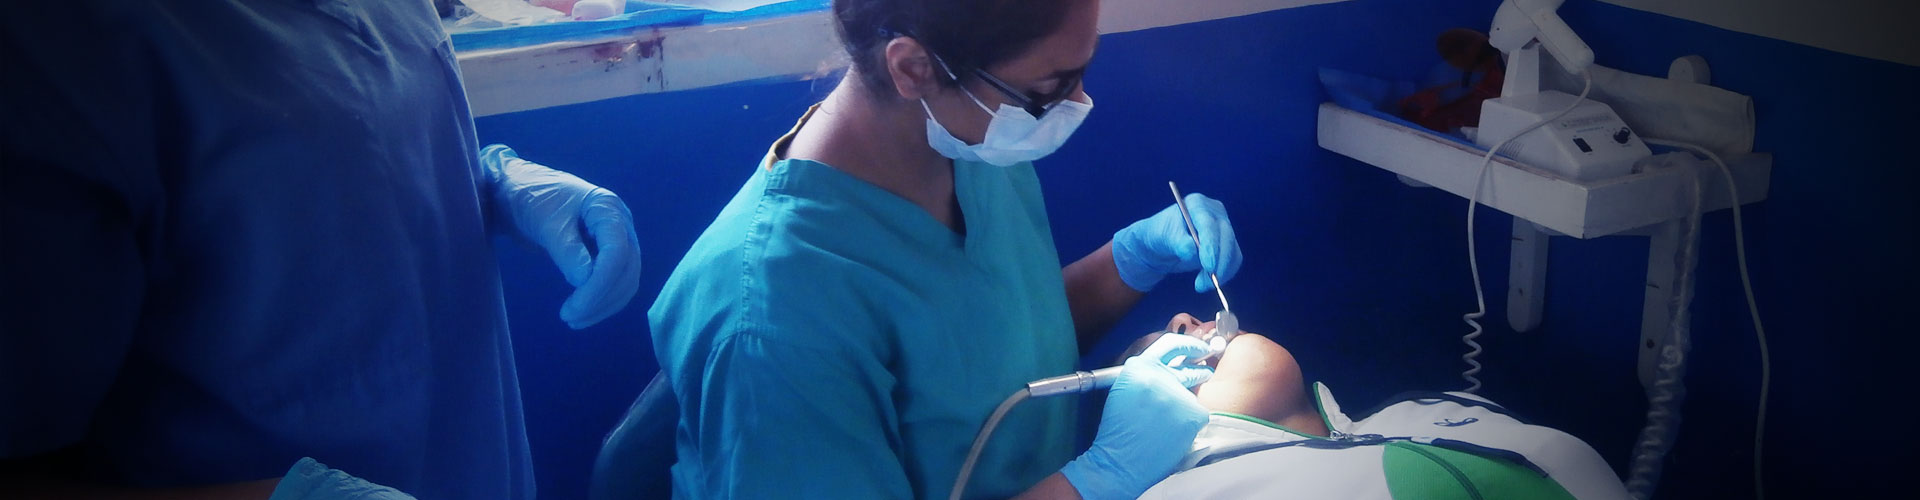 Estágio Odontológico Eletivo no Peru